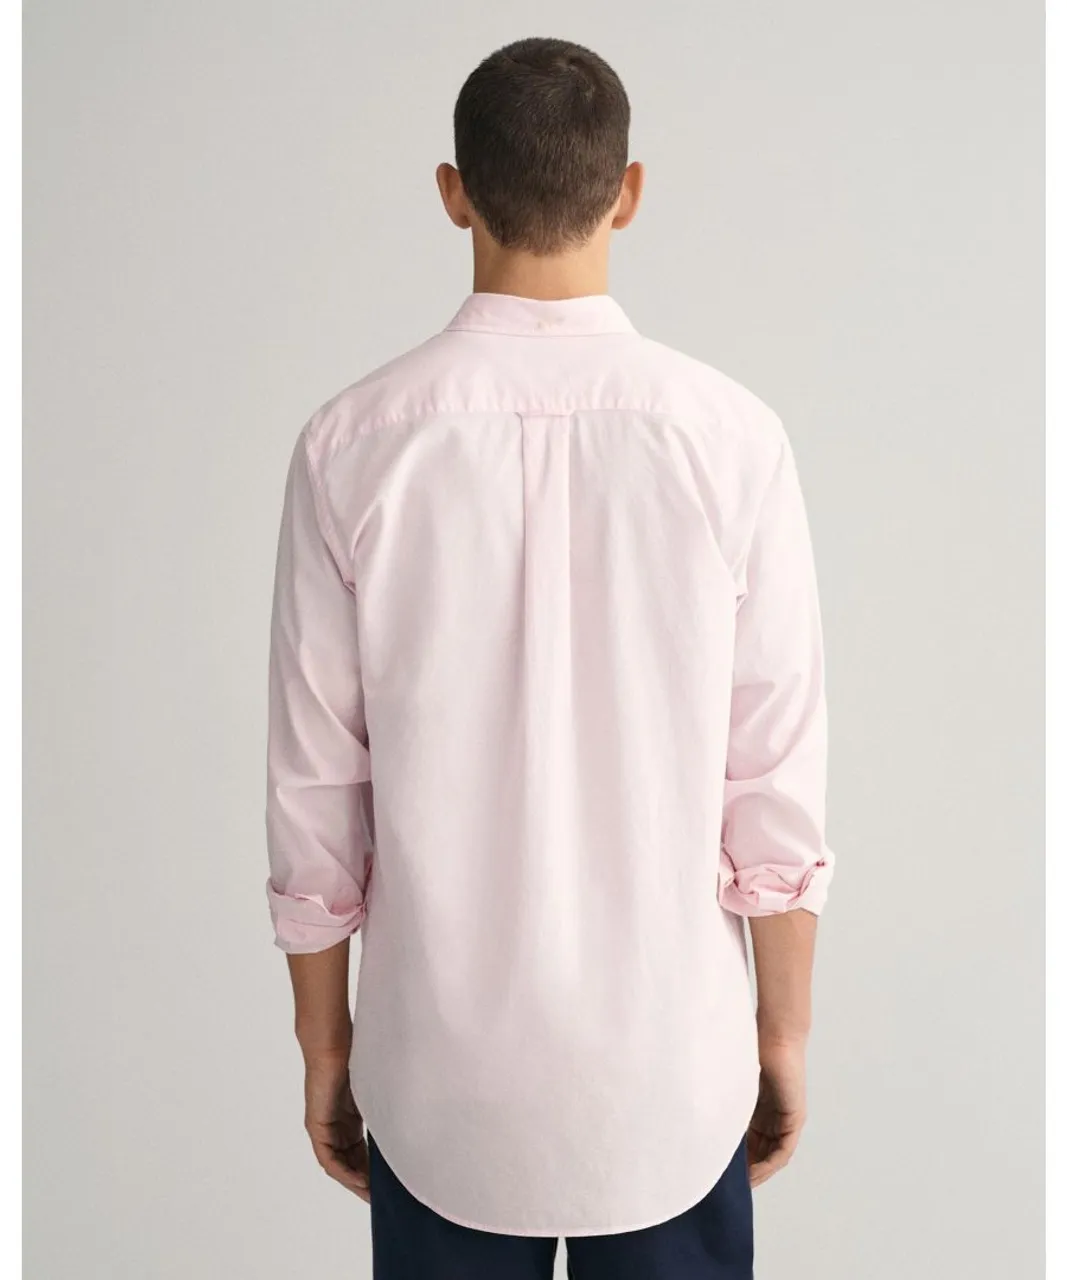 Gant Mens Regular Fit Long Sleeve Poplin Shirt - Light Pink